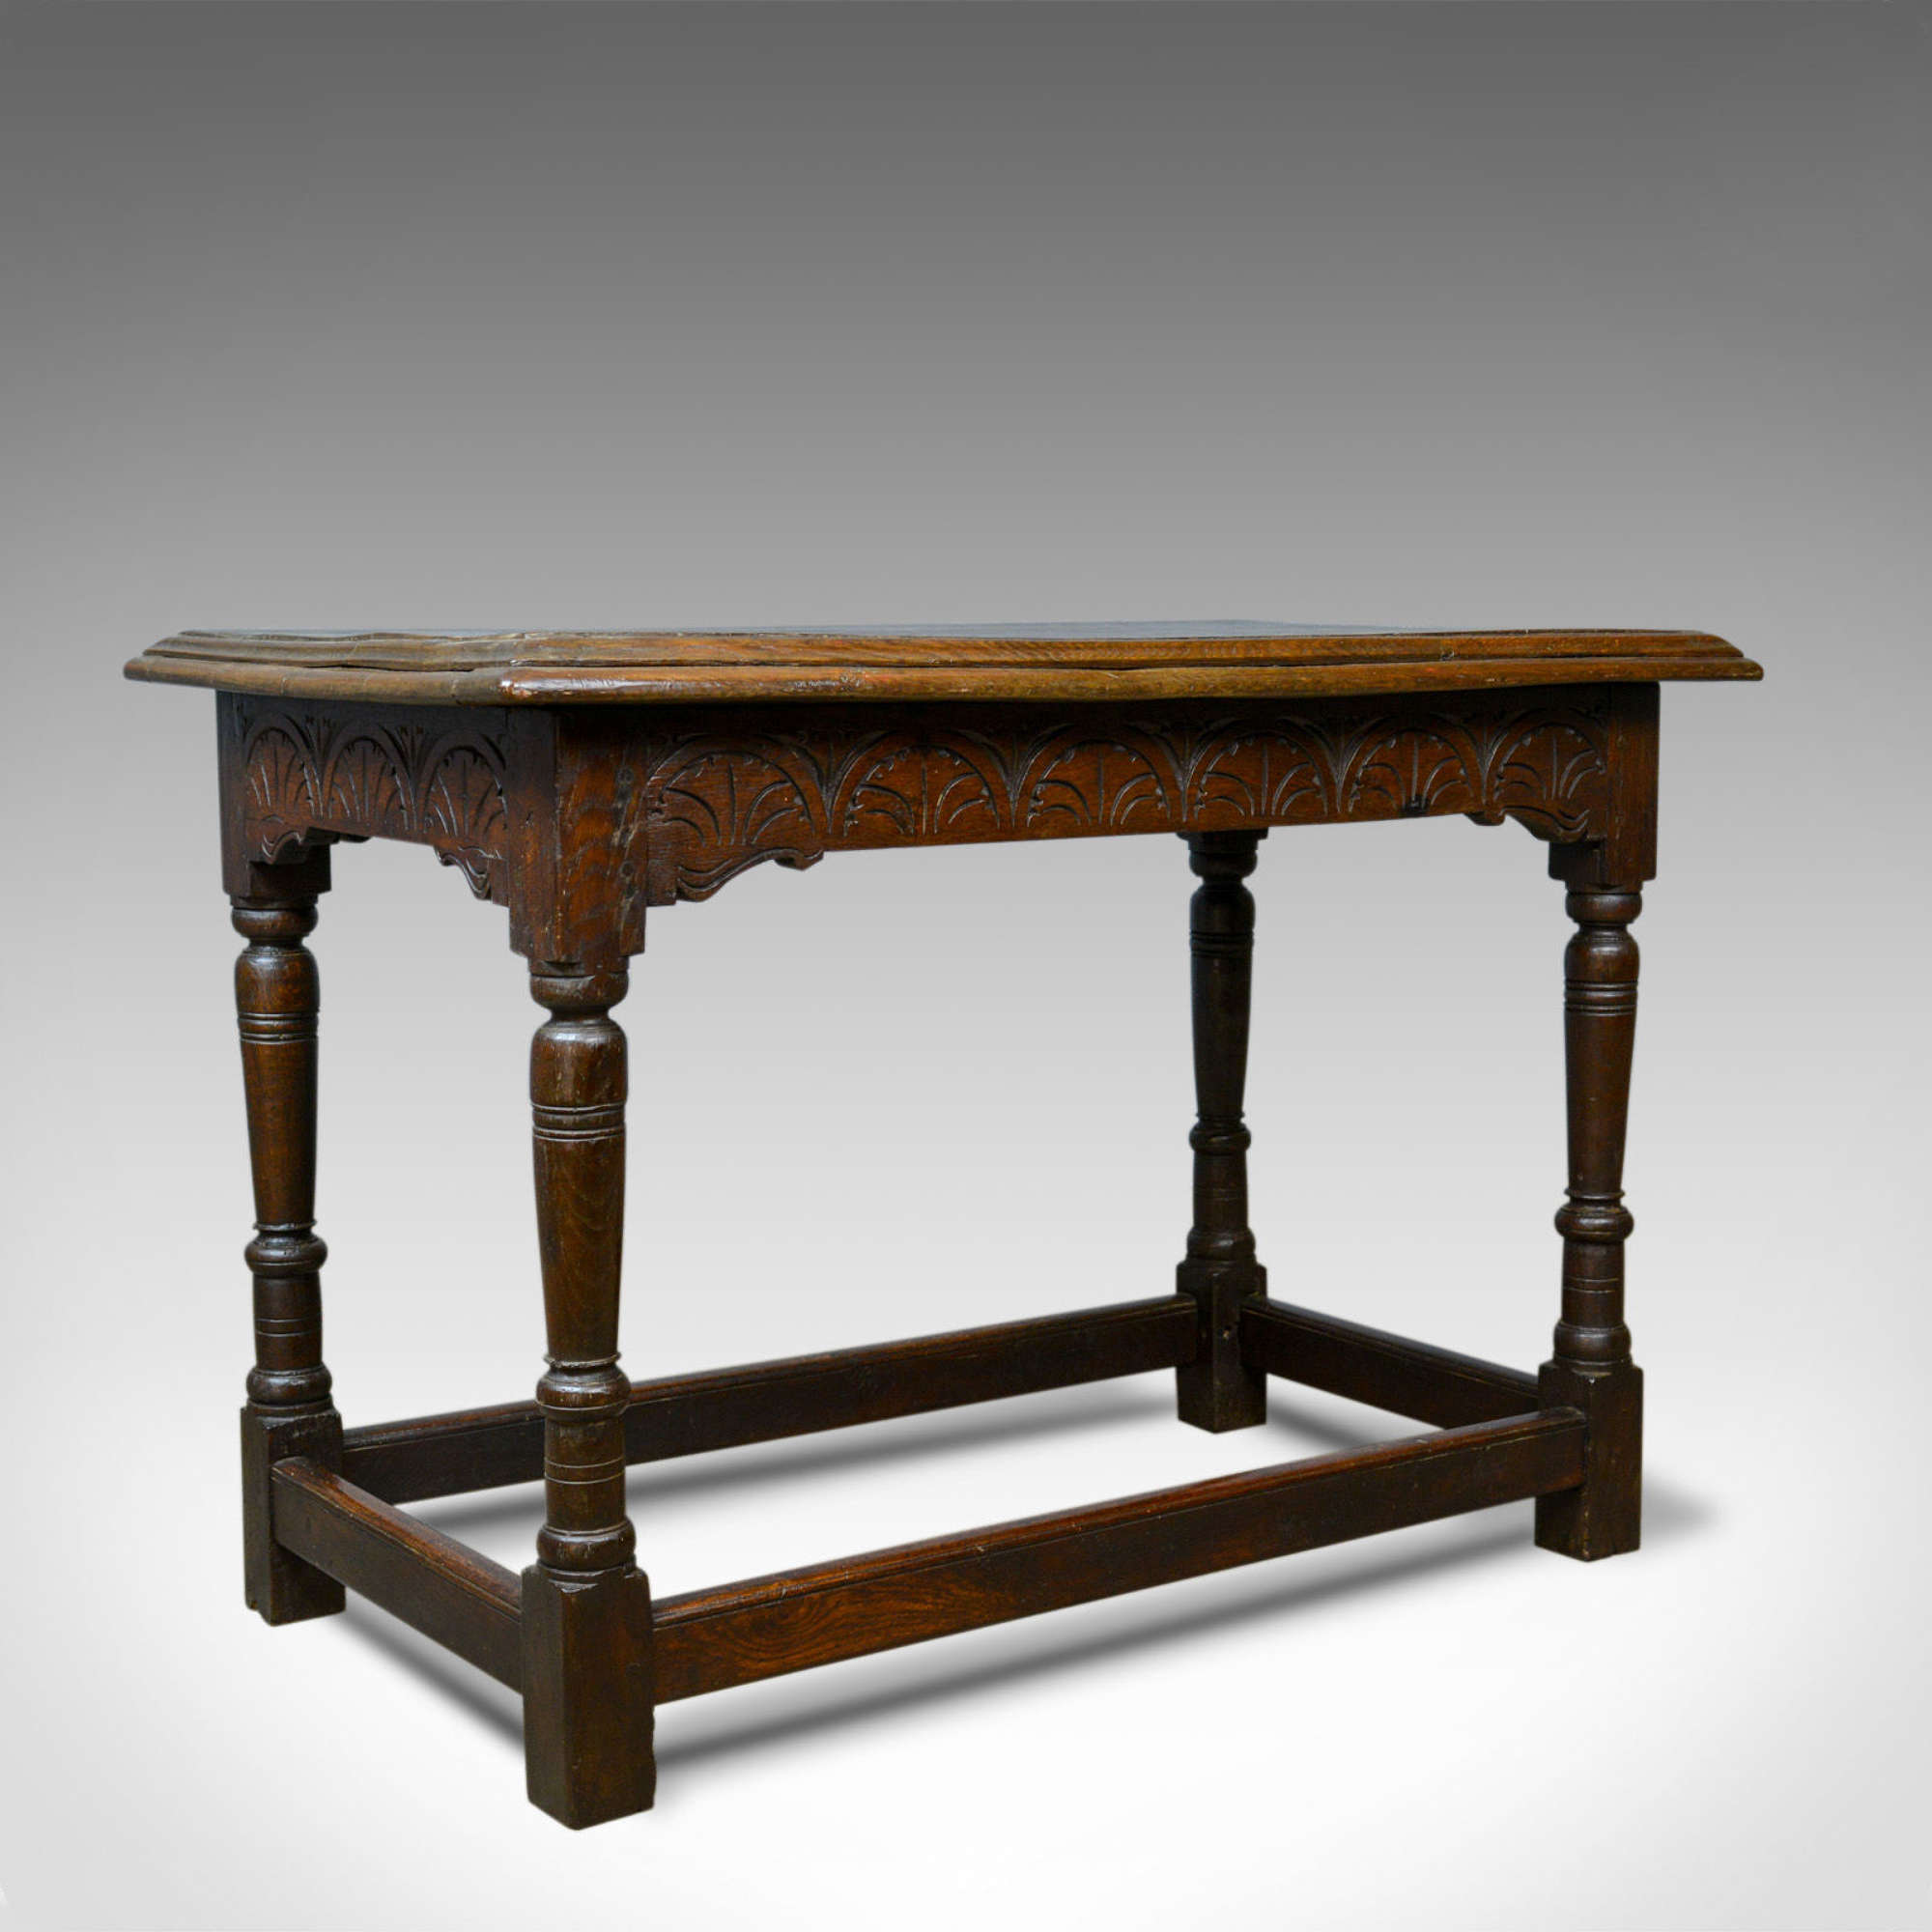 Antique Oak Console Table, English, Jacobean Revival, Refectory C.1800